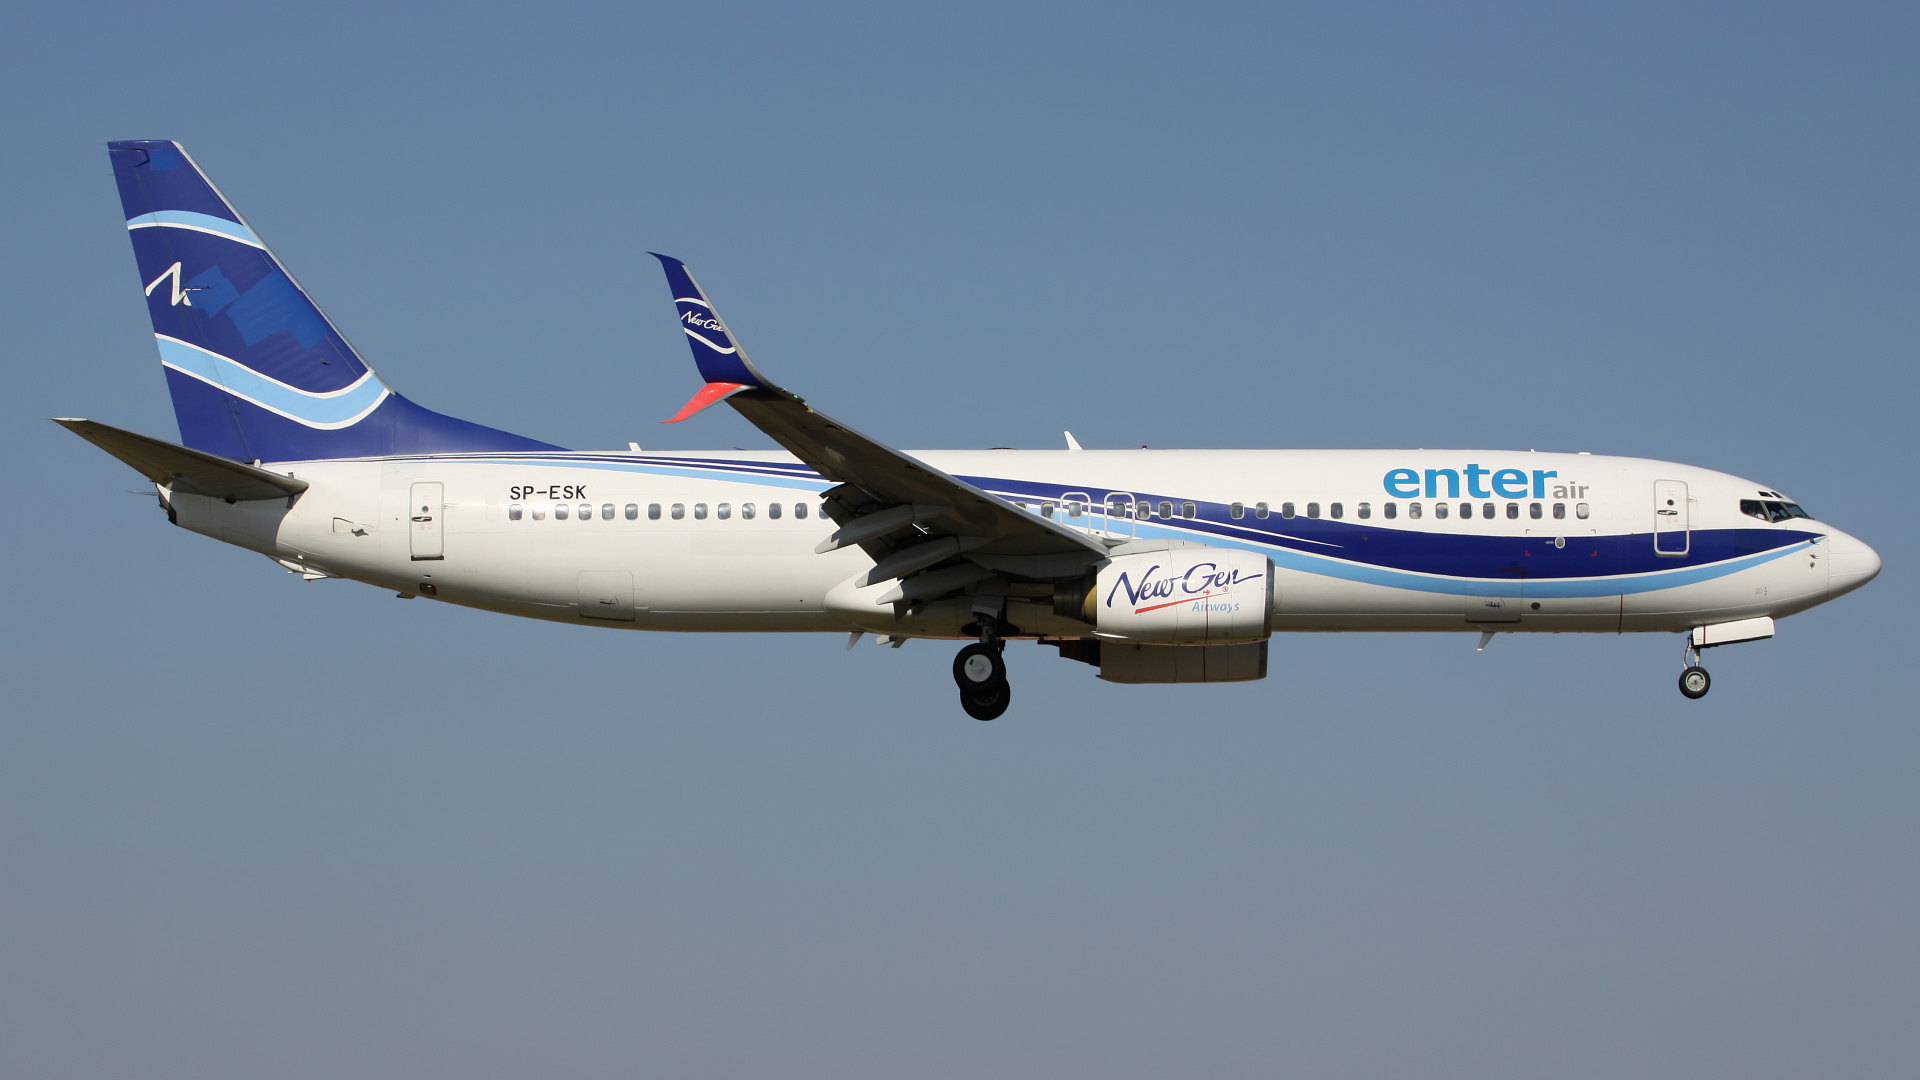 SP-ESK (NewGen Airways) (Aircraft » EPWA Spotting » Boeing 737-800 » Enter Air)